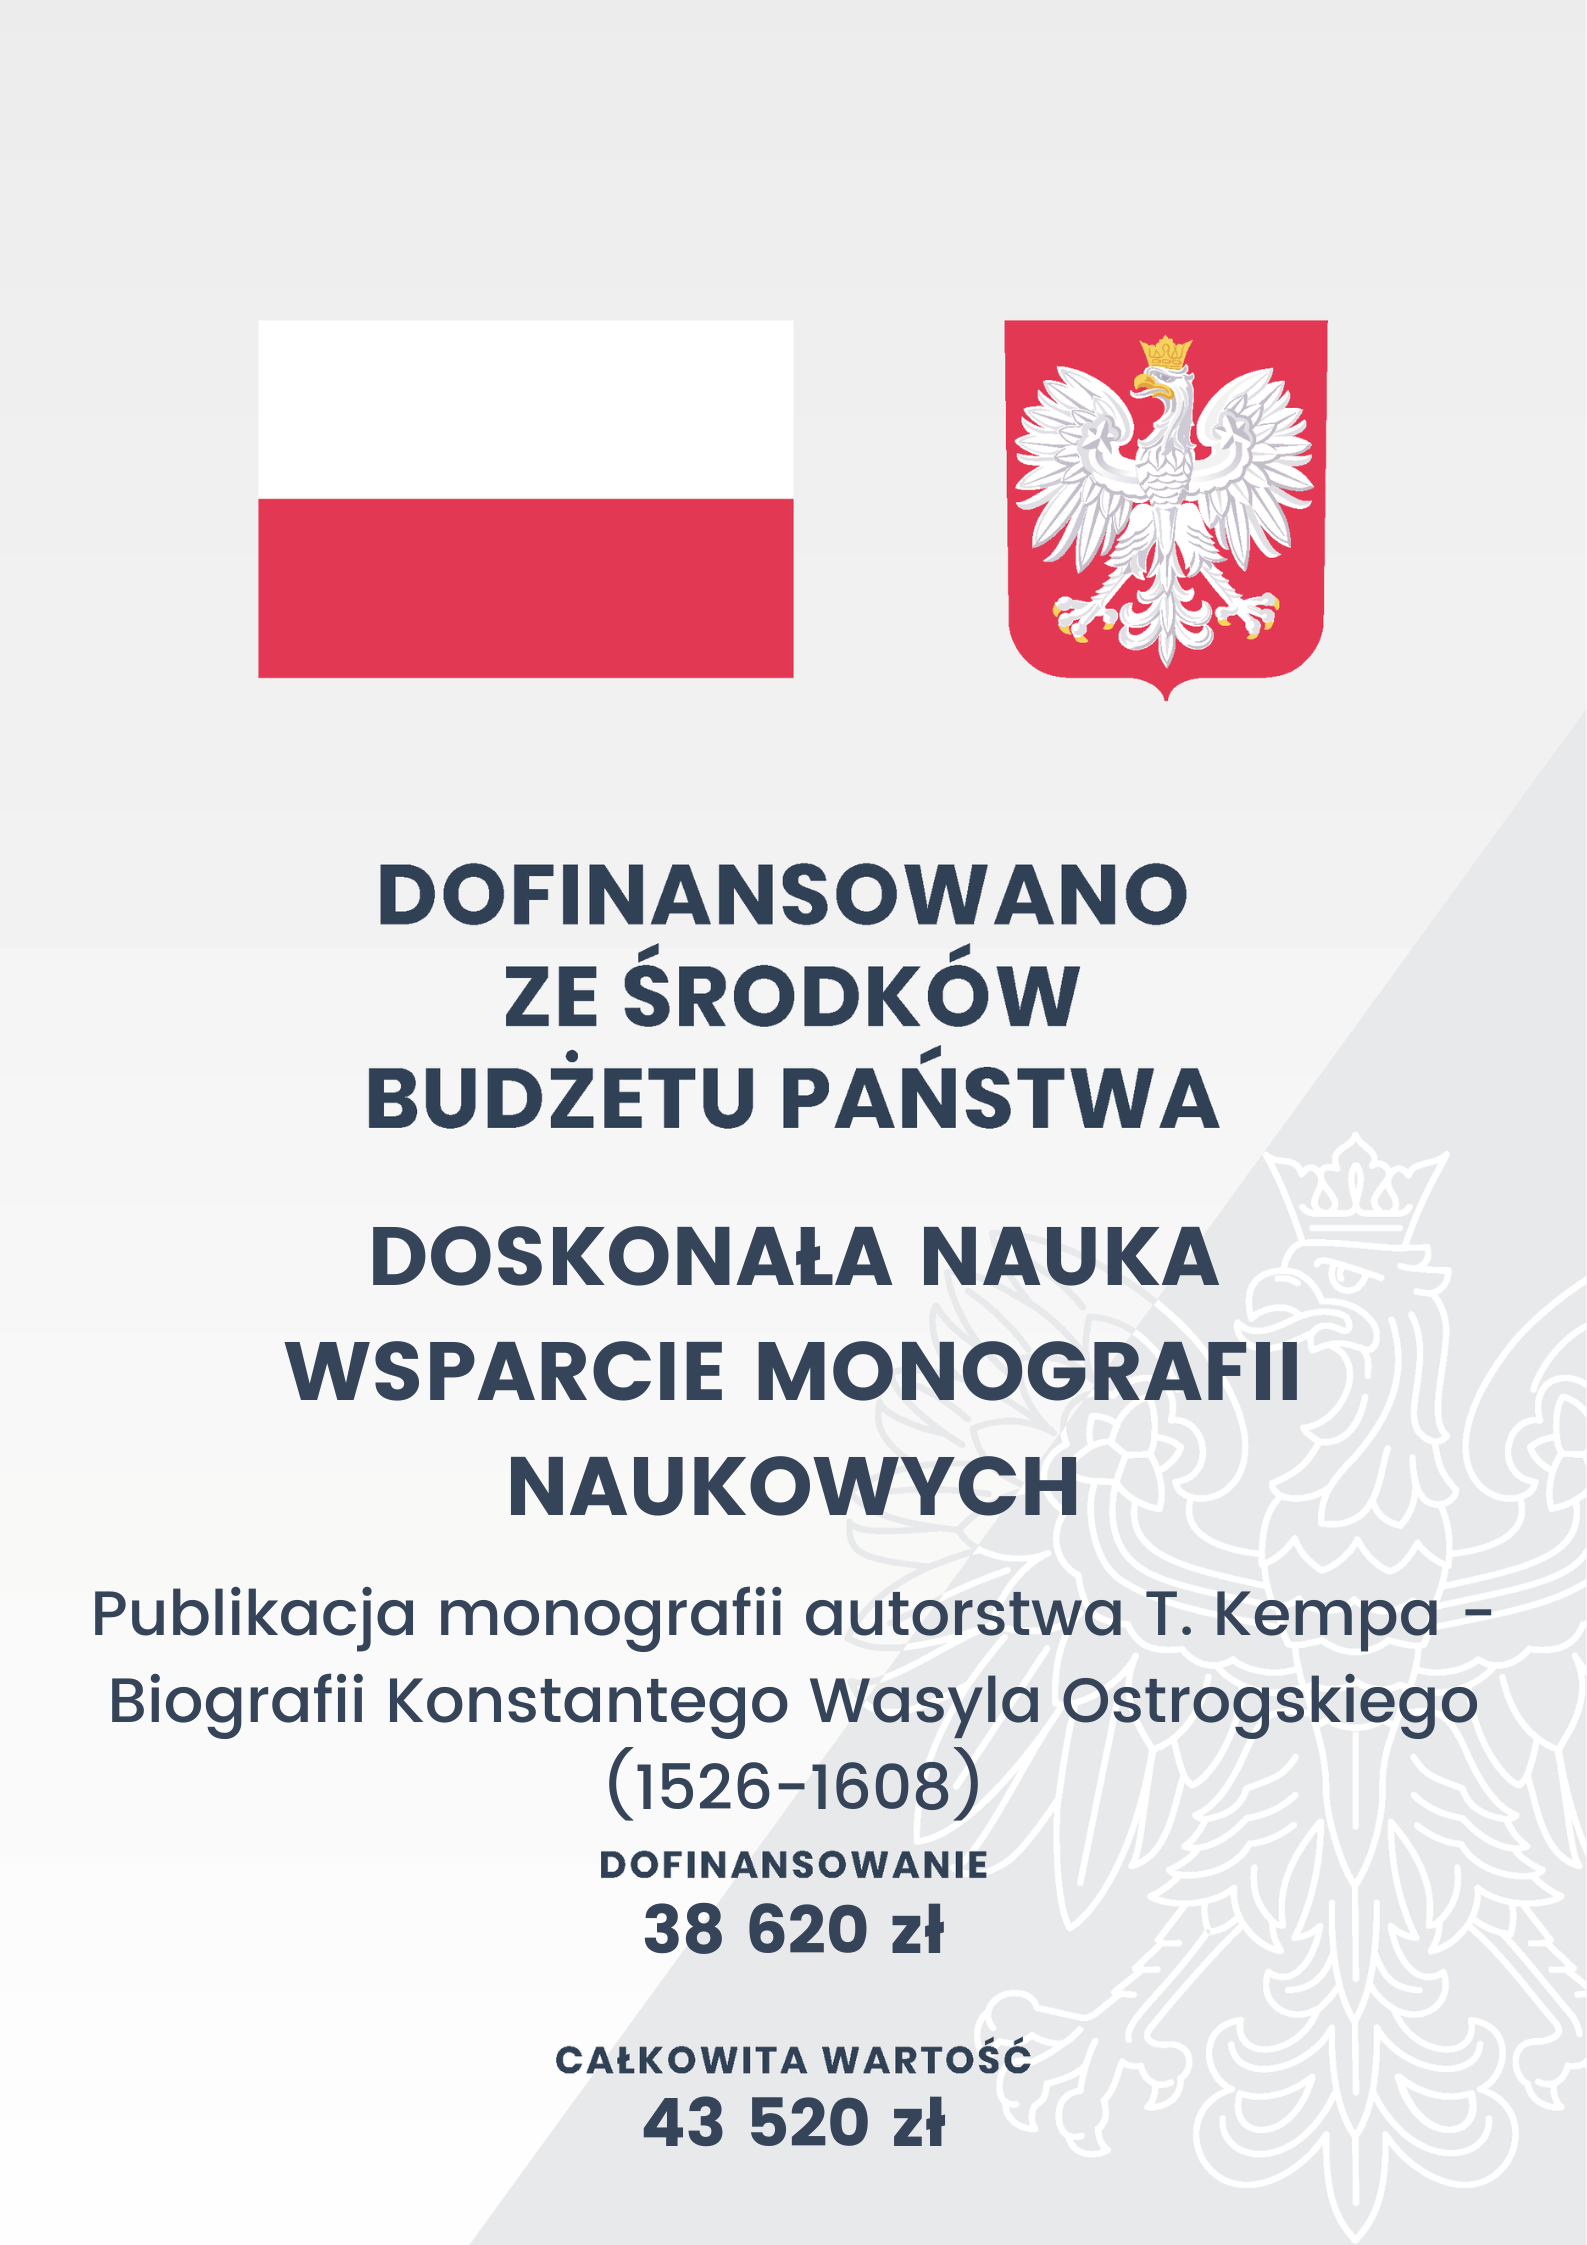 flaga Polski, godło Polski, napis "dofinansowano ze środków budżetu państwa"